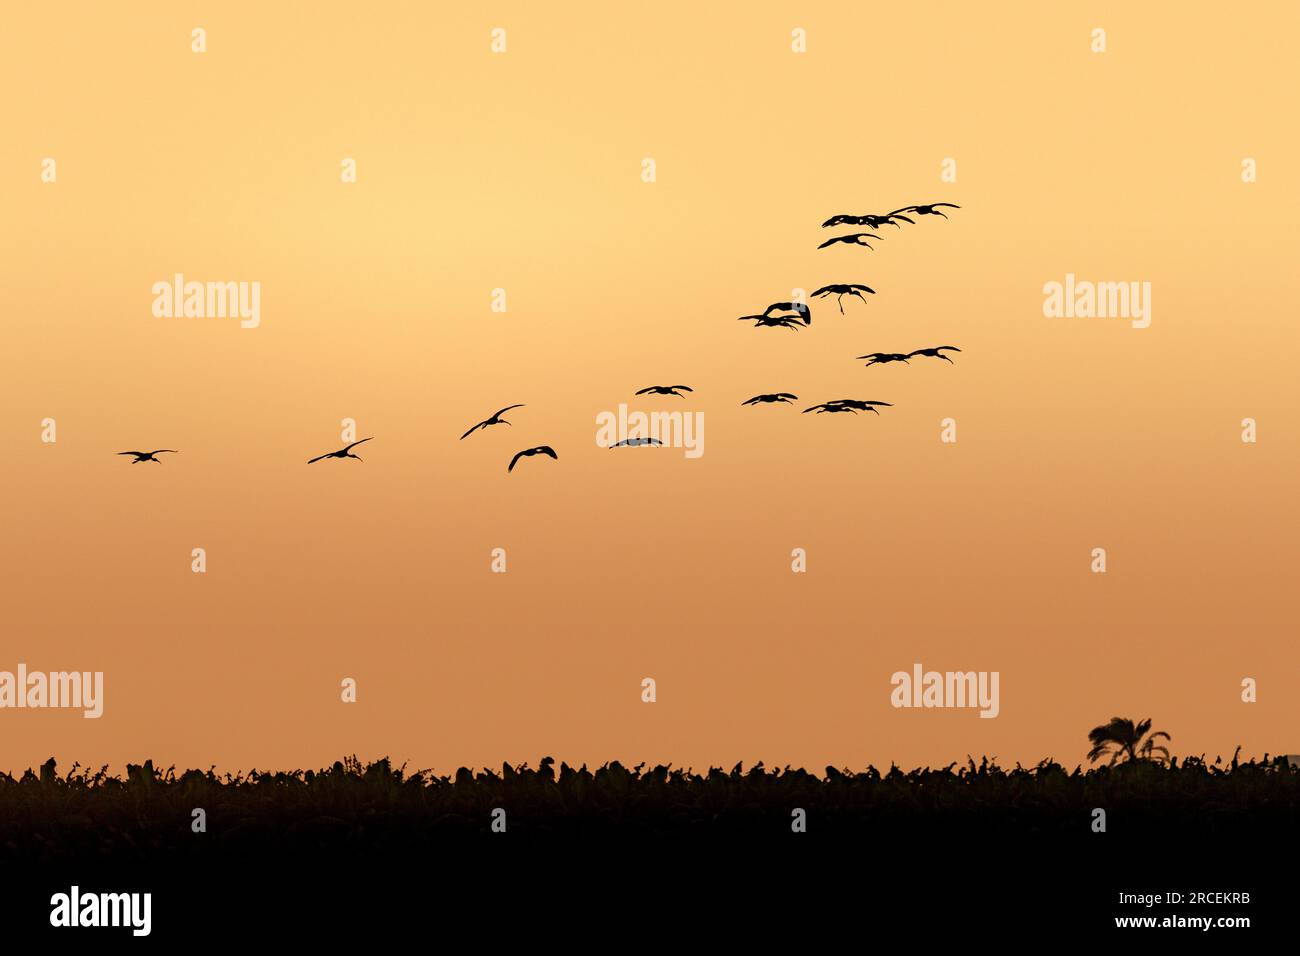 Un troupeau d'ibises, silhouettés contre le ciel au crépuscule, volant le long du Nil près de Louxor Banque D'Images